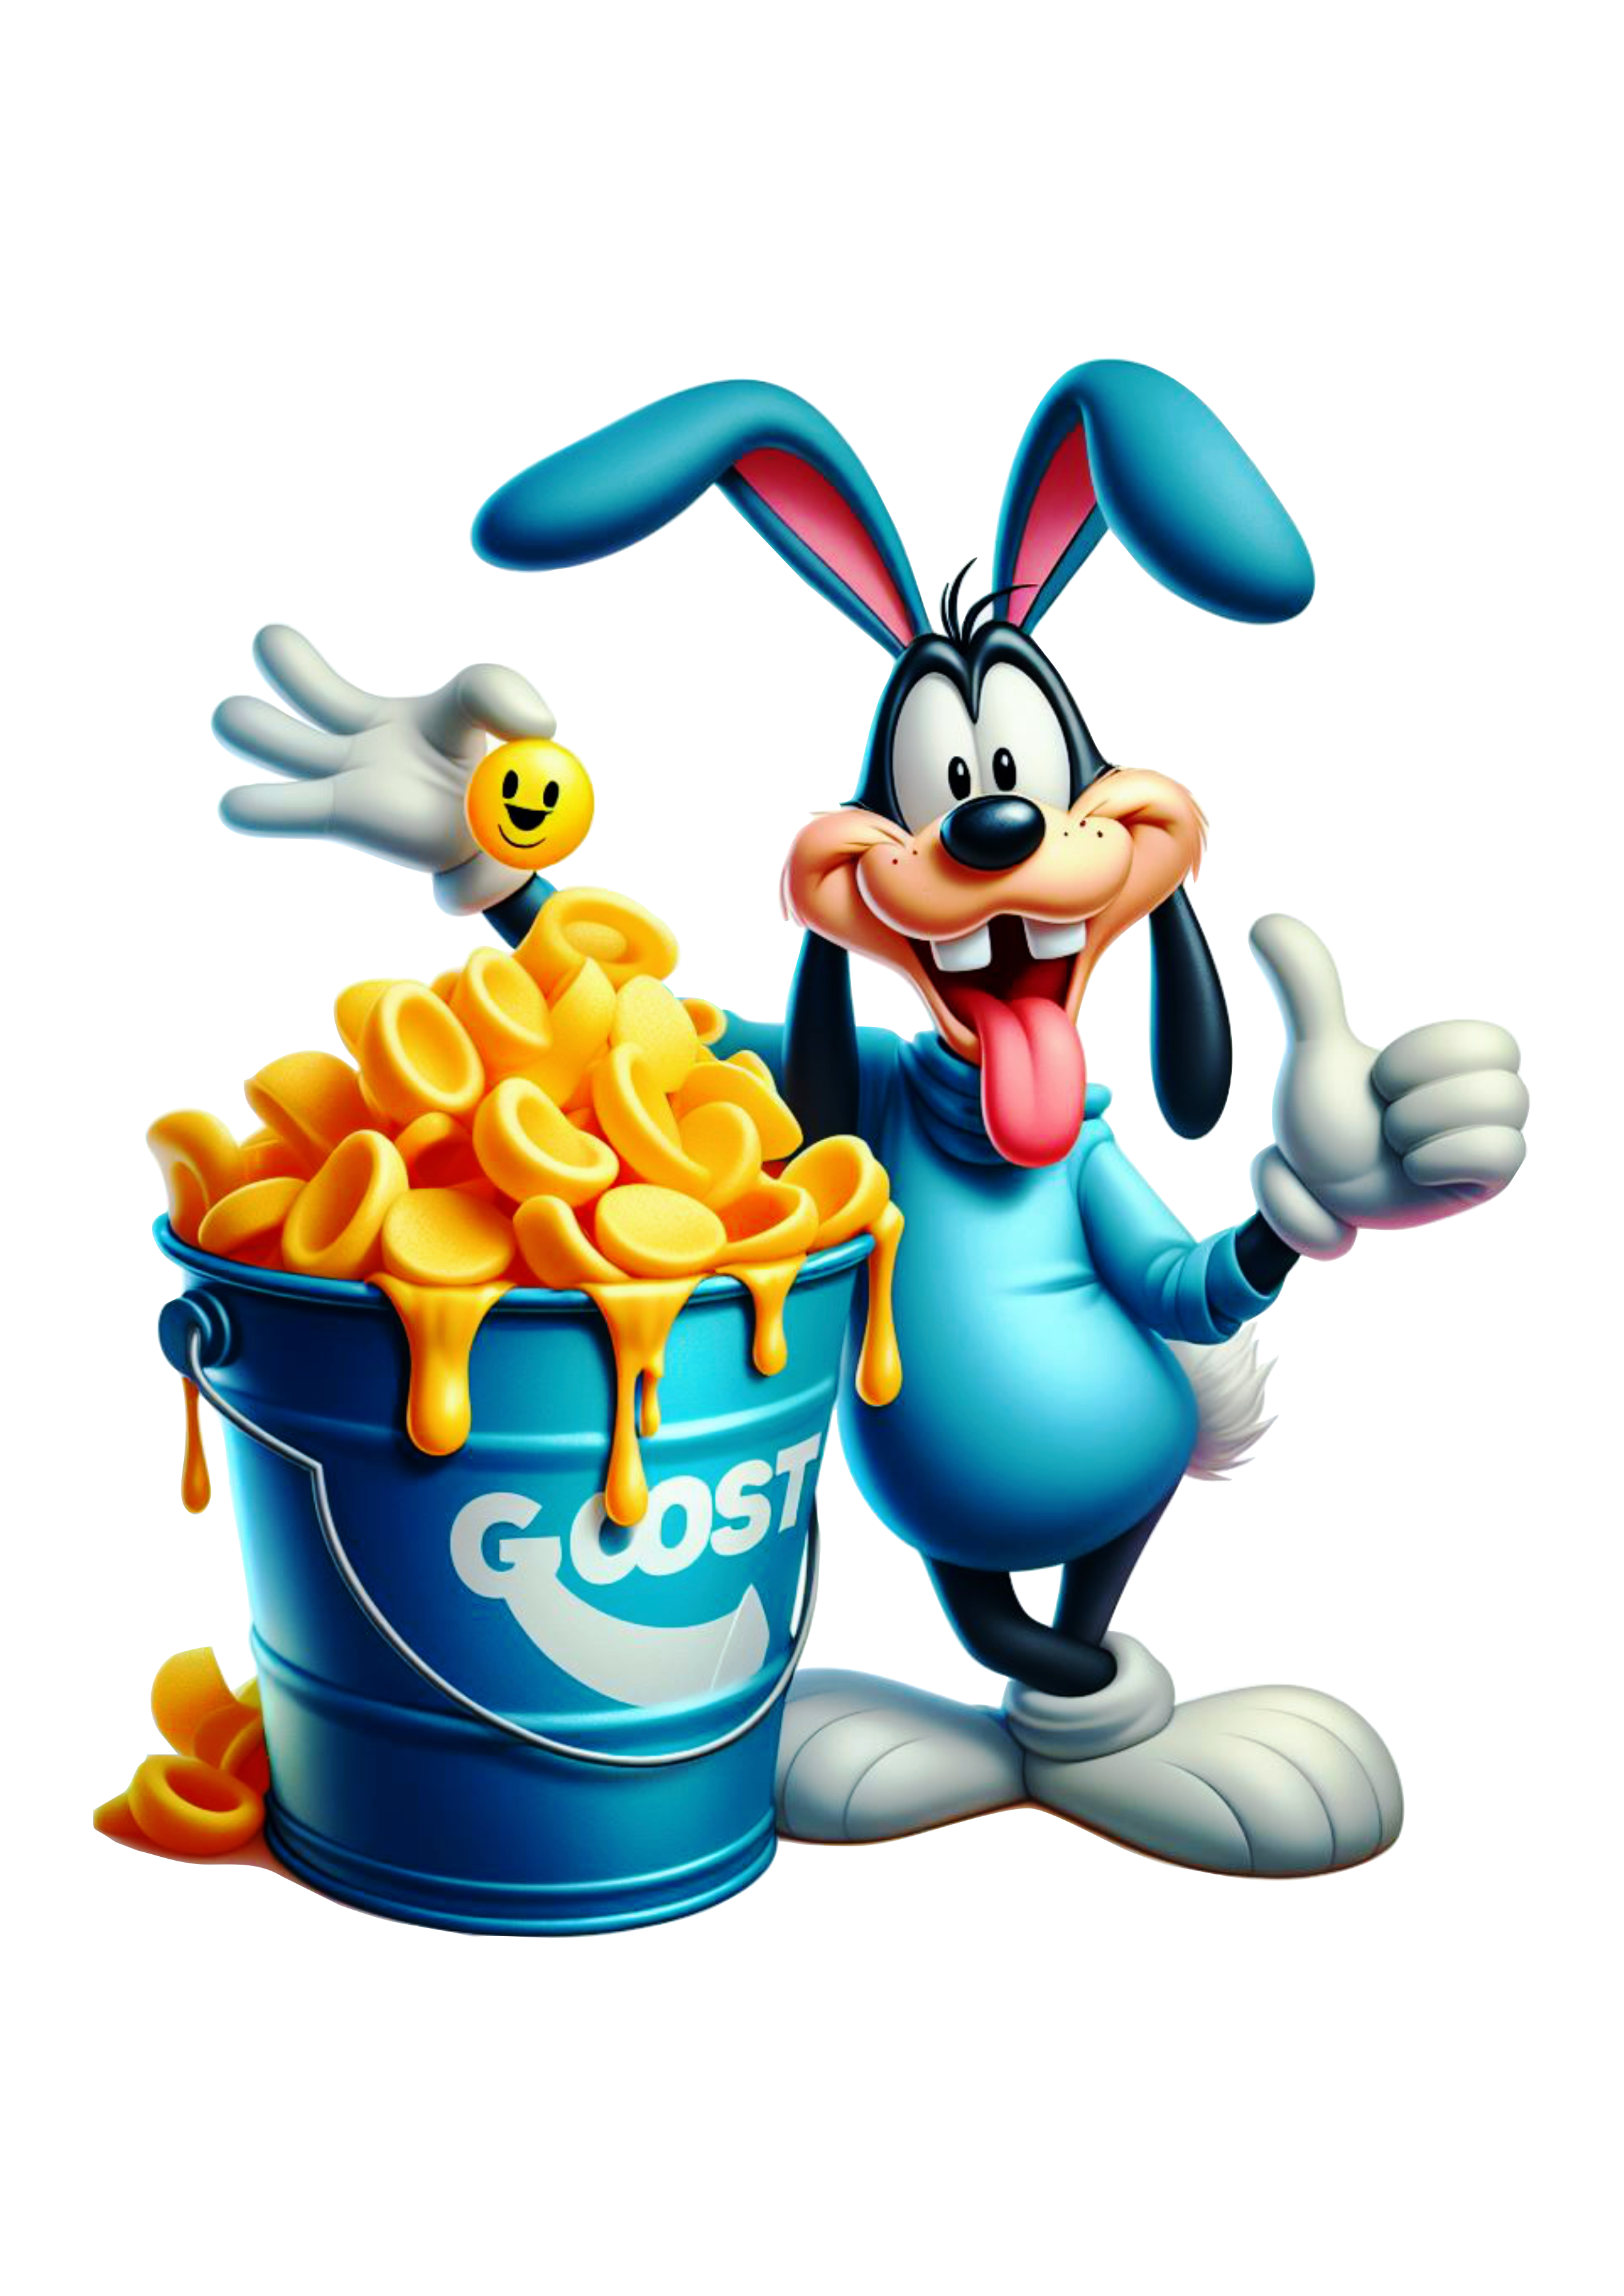 Turma do Mickey Mouse especial de páscoa pateta com cesta de ovos de chocolate vetor clipart Disney decoração fundo transparente png